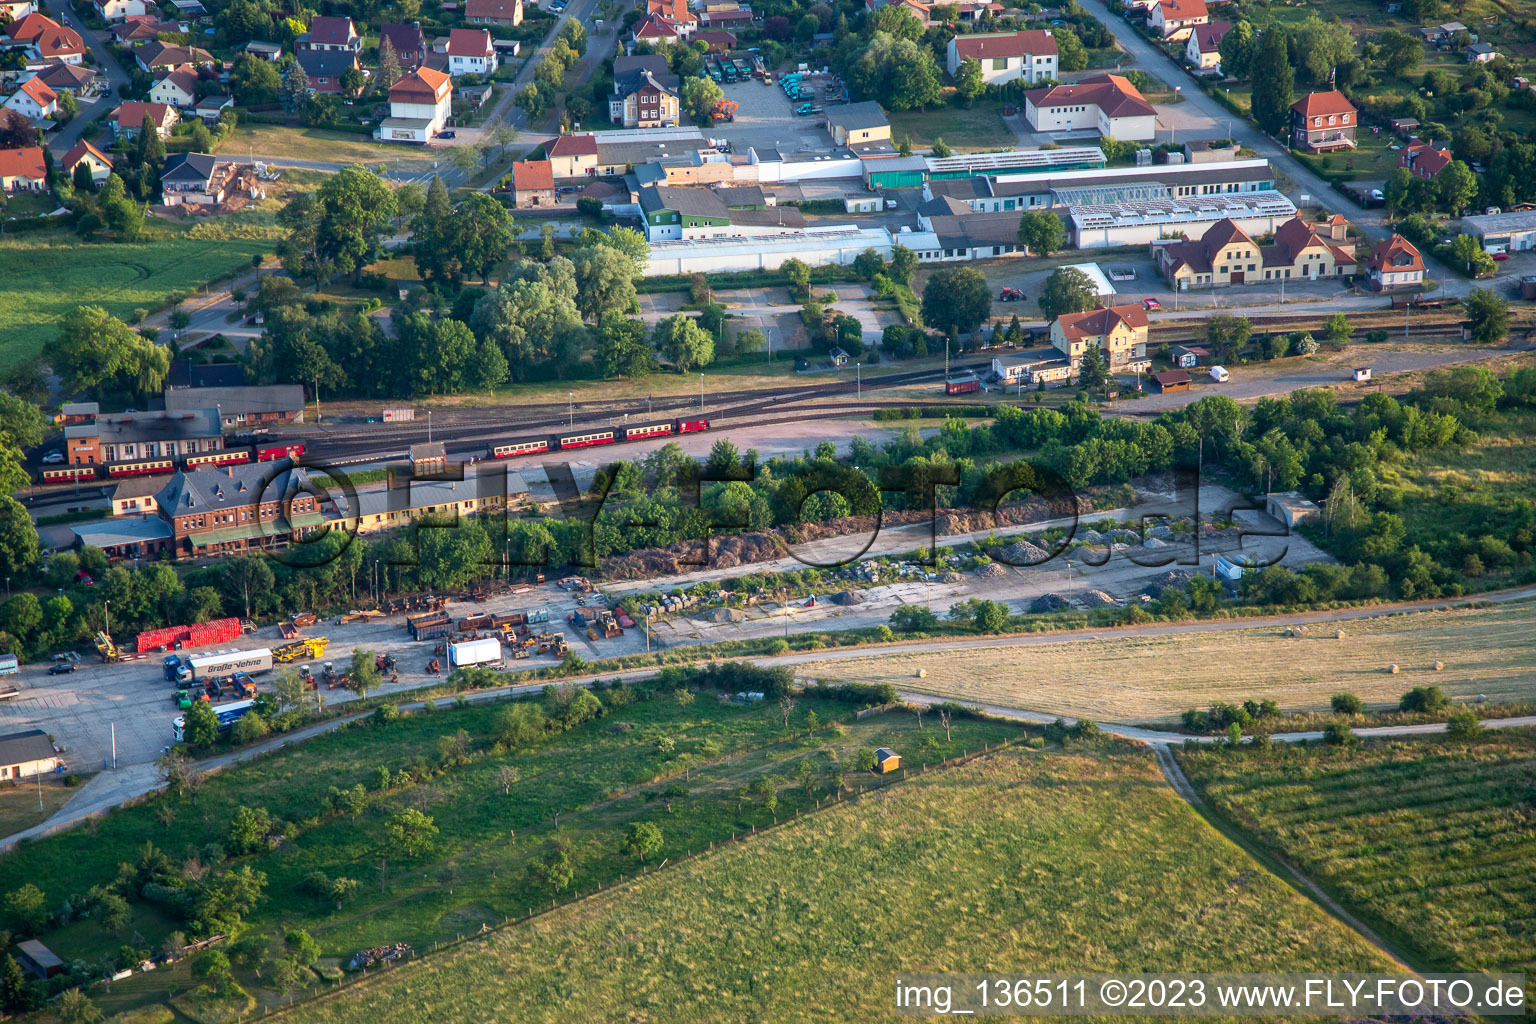 Bahnhof des Freundeskreis Selketalbahn e. V im Ortsteil Gernrode in Quedlinburg im Bundesland Sachsen-Anhalt, Deutschland